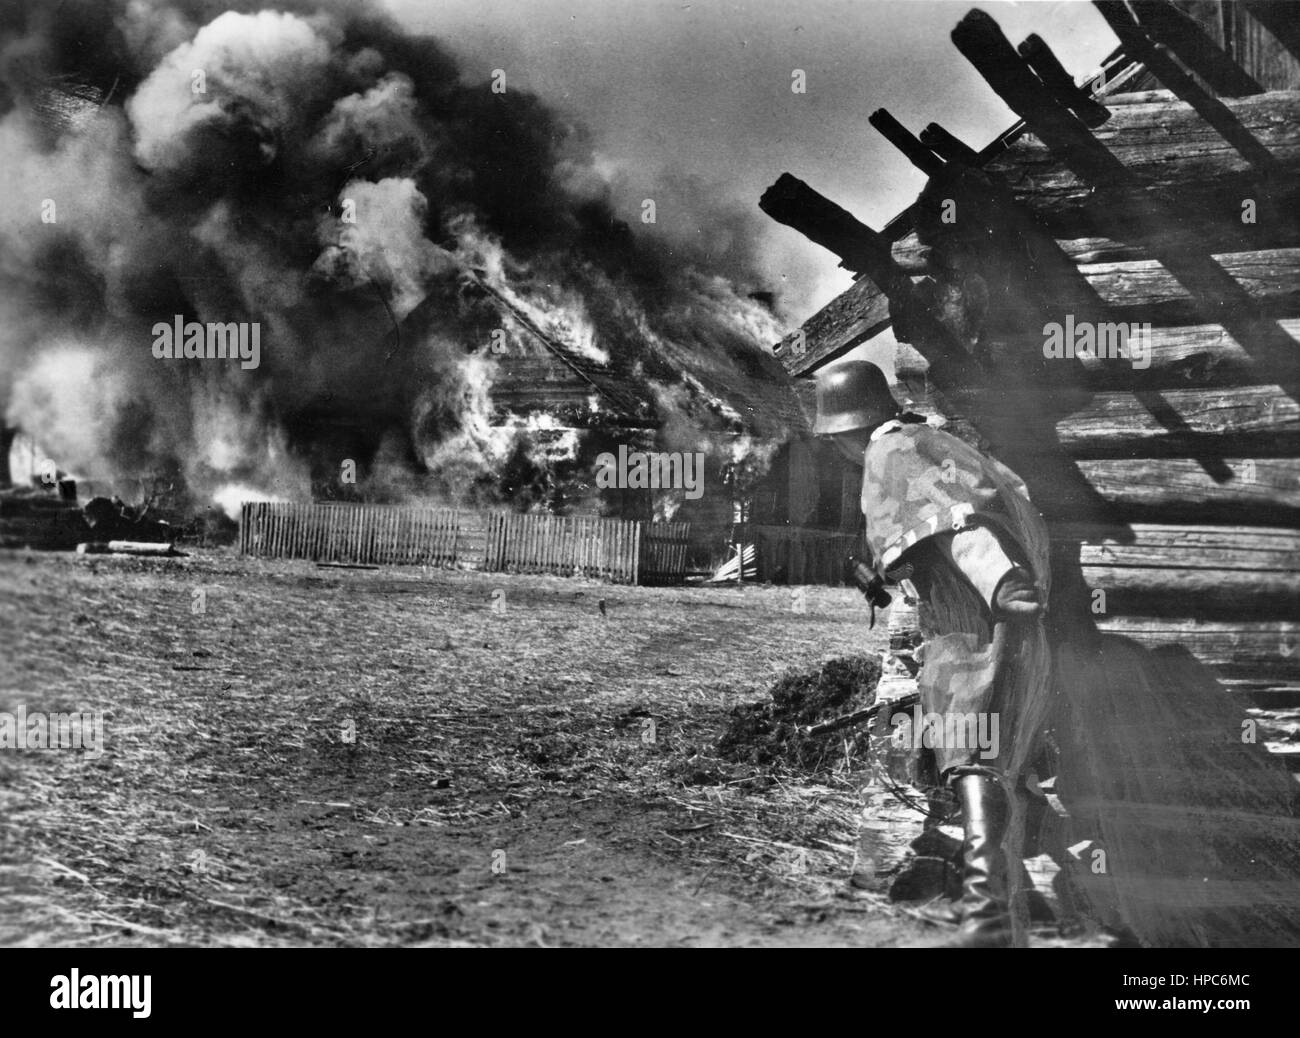 La Propaganda nazista! Sul retro dell'immagine si legge: "banditi sono fumato. SS granatieri catturati nuovamente una pista bolscevista in uno dei villaggi che appartengono alla loro base. La pista nidi ogni sono circondati e mentre alcuni granatieri fissare la zona con l'IMG, altri lavorano il loro cammino verso le case sul fuoco. Esplosioni di pesanti mostrano che una grande quantità di munizioni è stato memorizzato in questa pista nido.' immagine dal fronte orientale/Russia, 21 luglio 1943. Poiché l'estate del 1942, il tedesco non erano autorizzati a utilizzare il termine "partigiani" più per motivi psicologici. Invece, termini come "gan Foto Stock